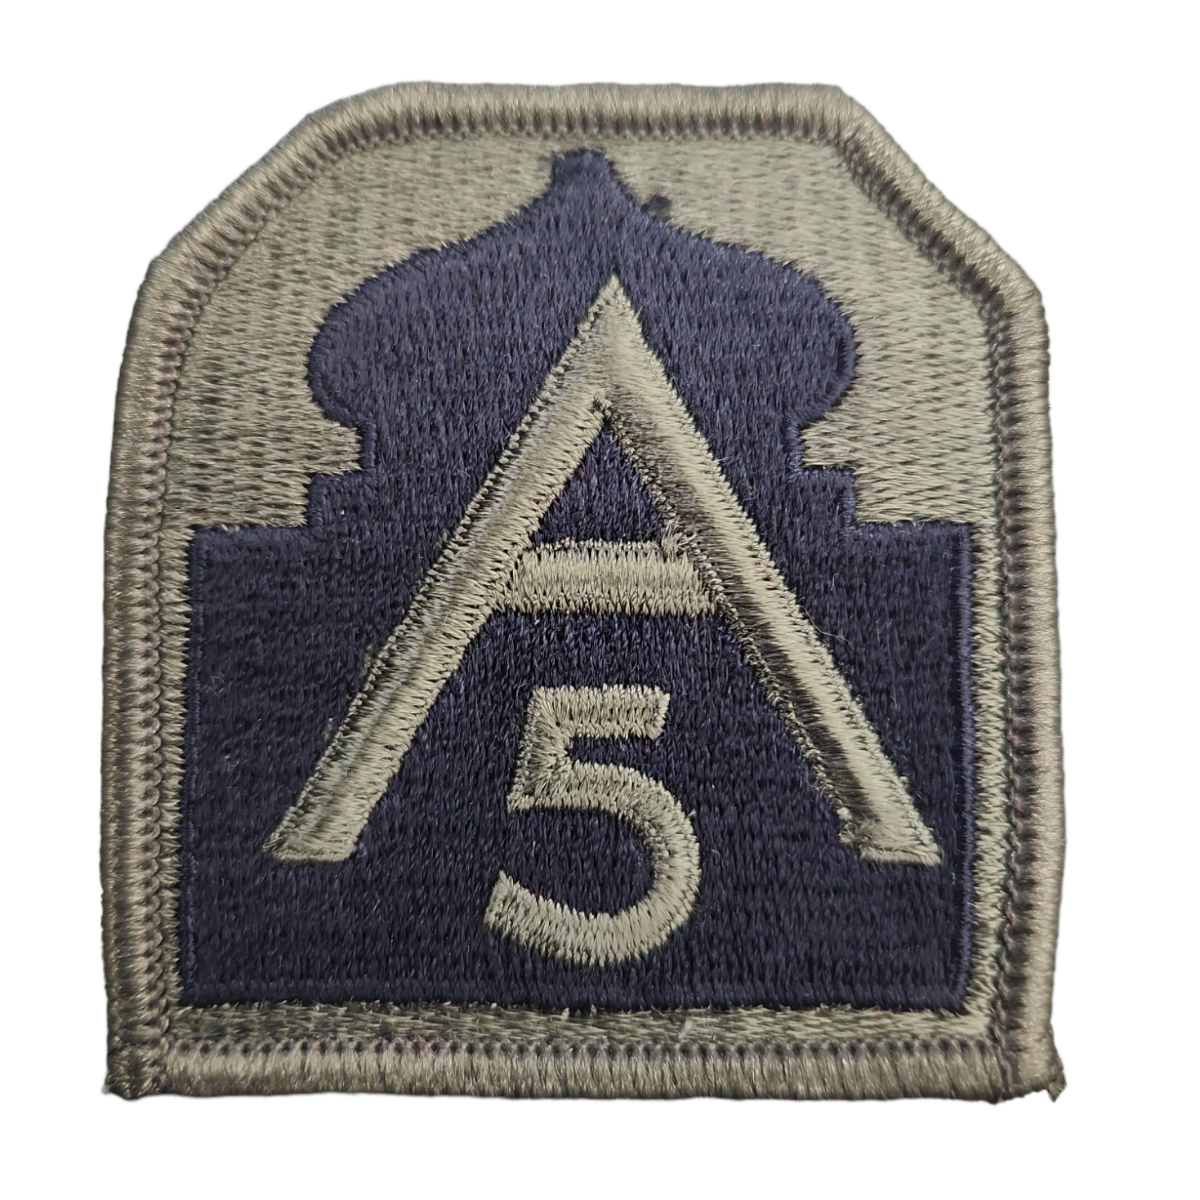 5th Army, U.S. Army Patch